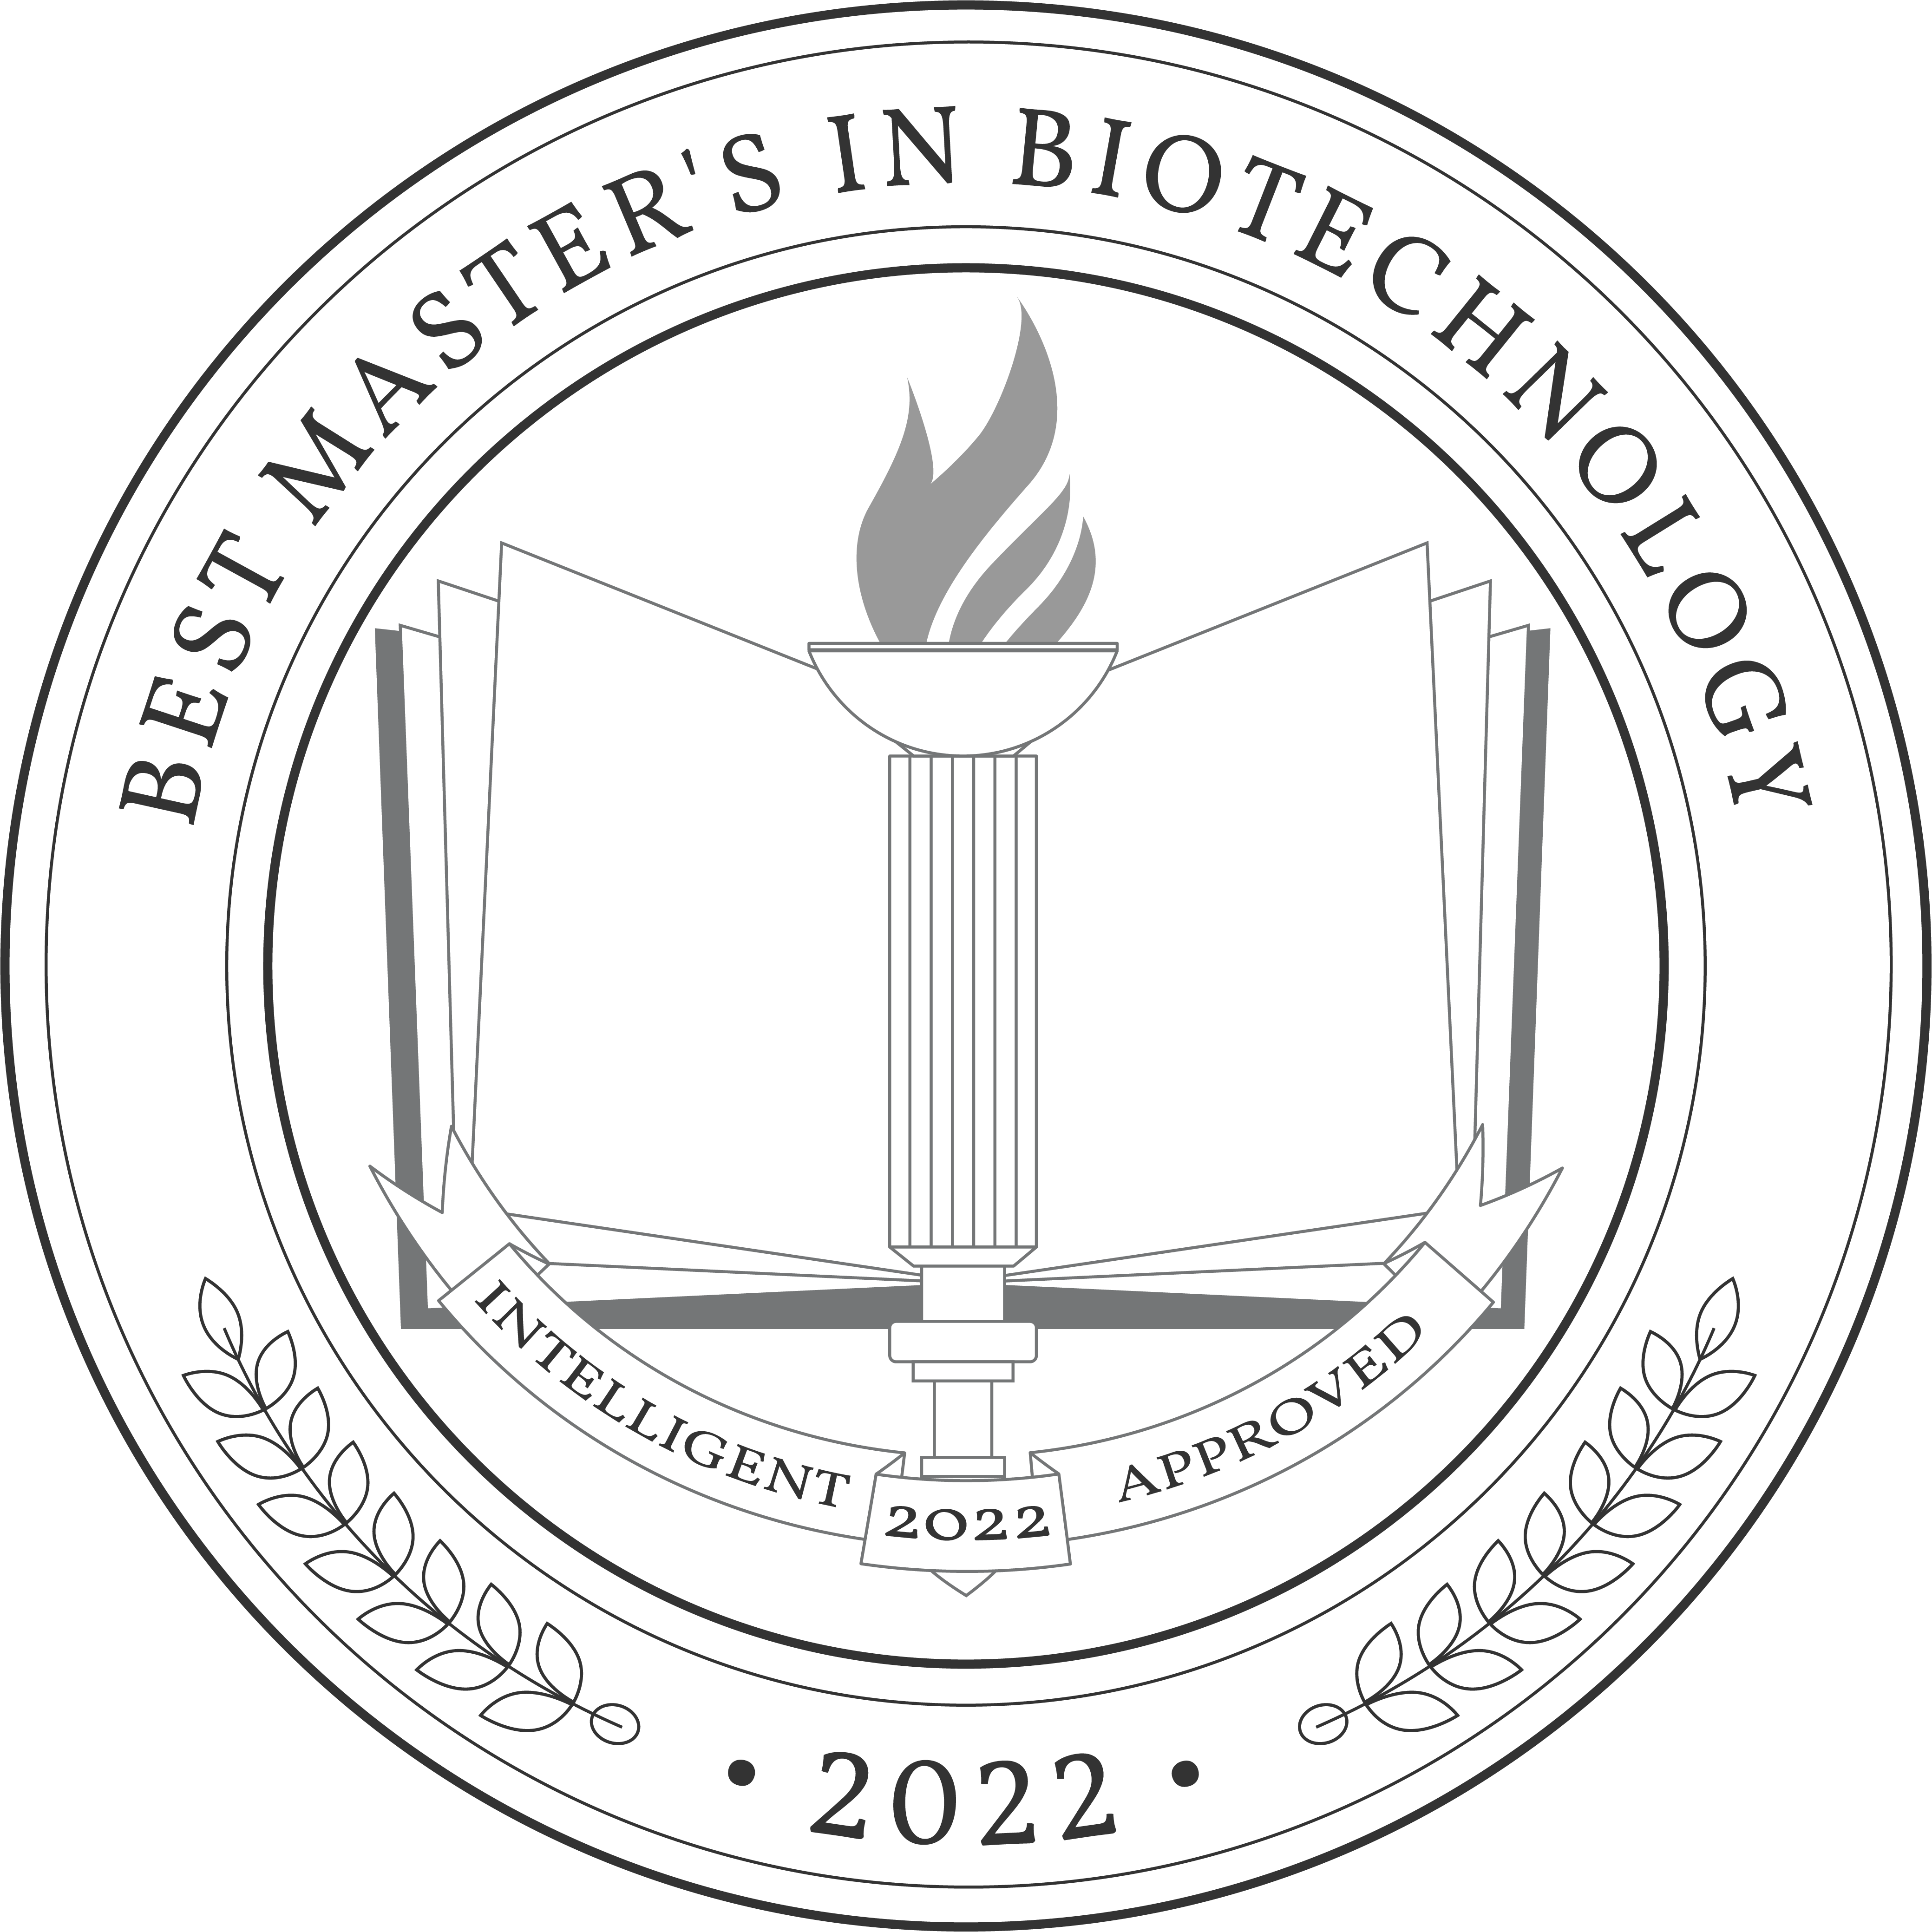 Best Master's in Biotechnology Degree Programs